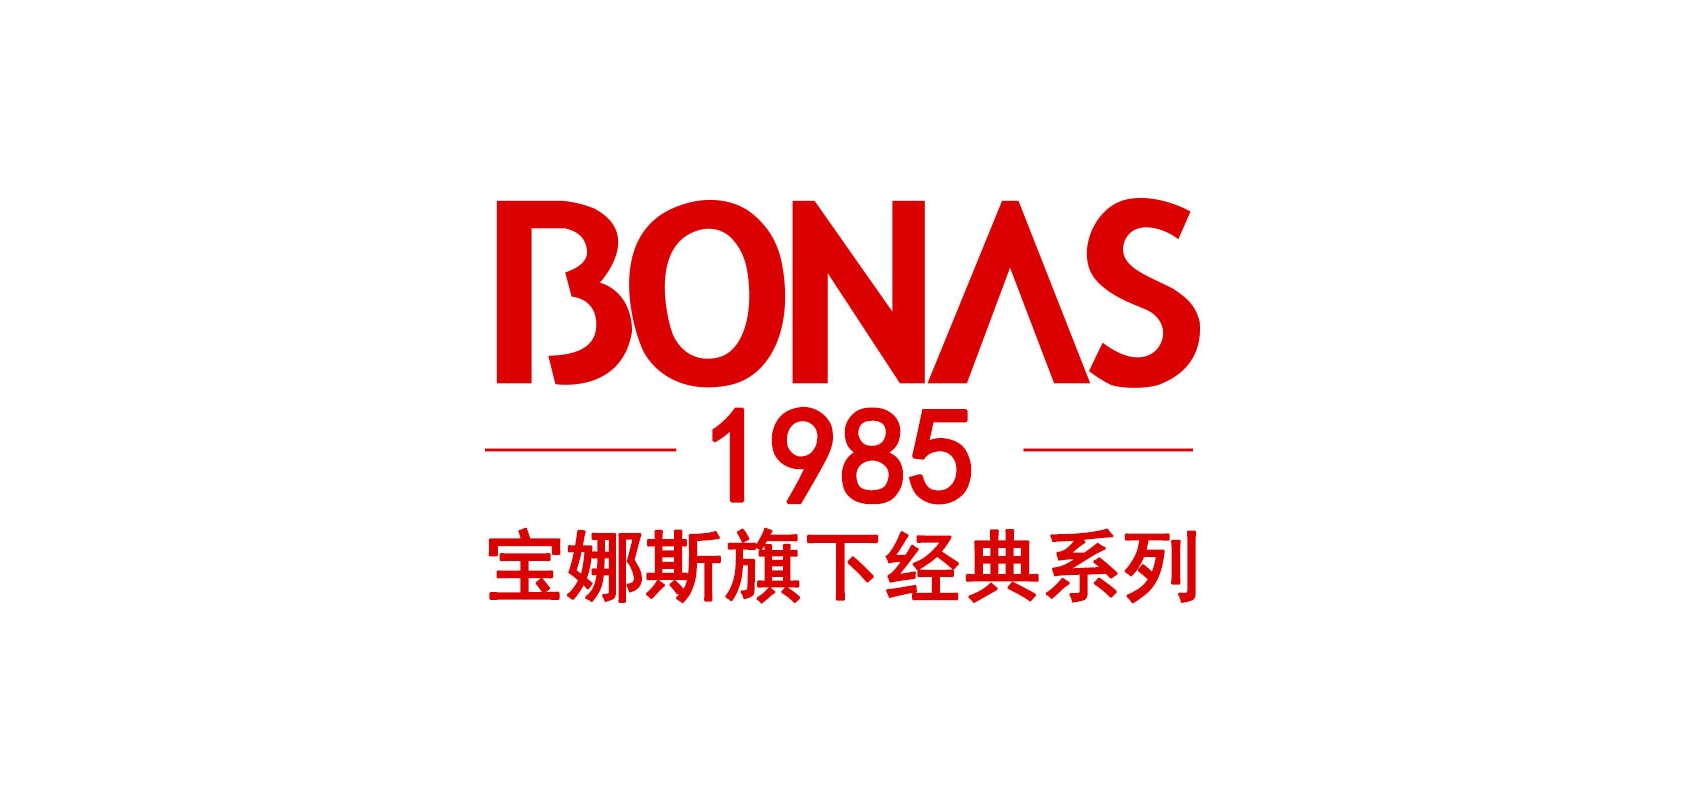 宝娜斯1985品牌logo